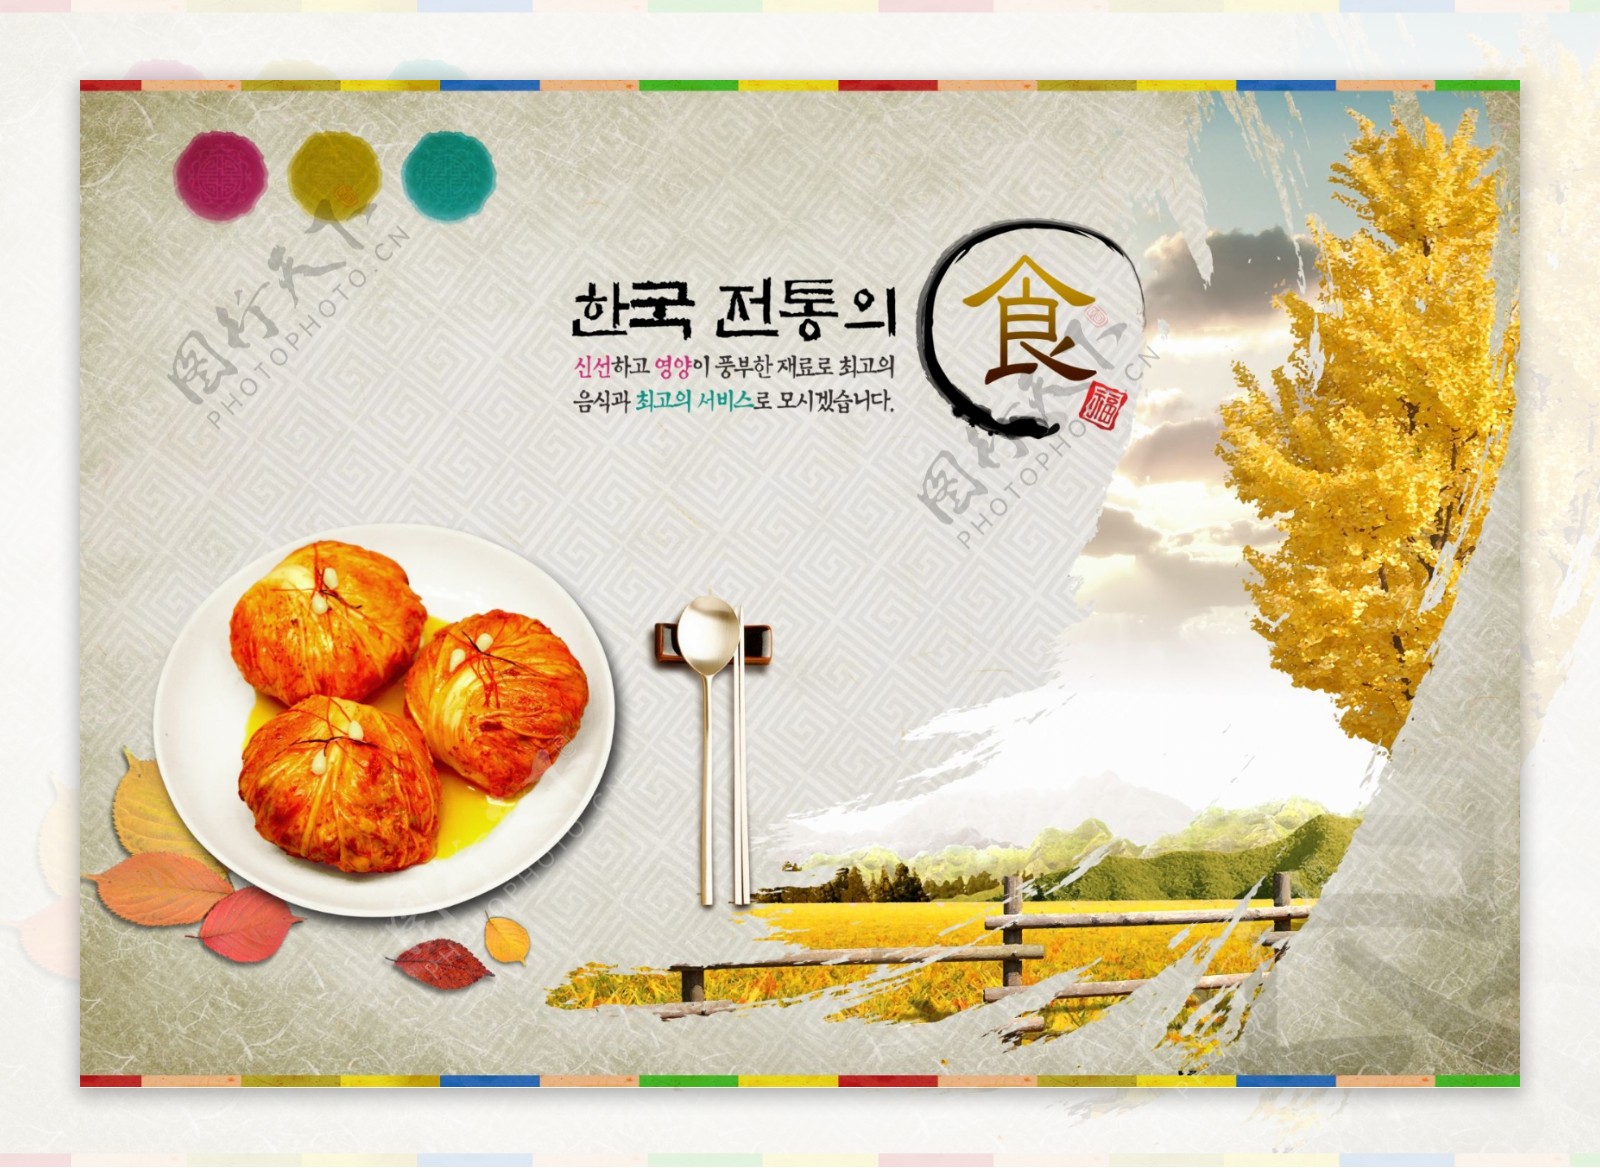 韩国美食文化海报